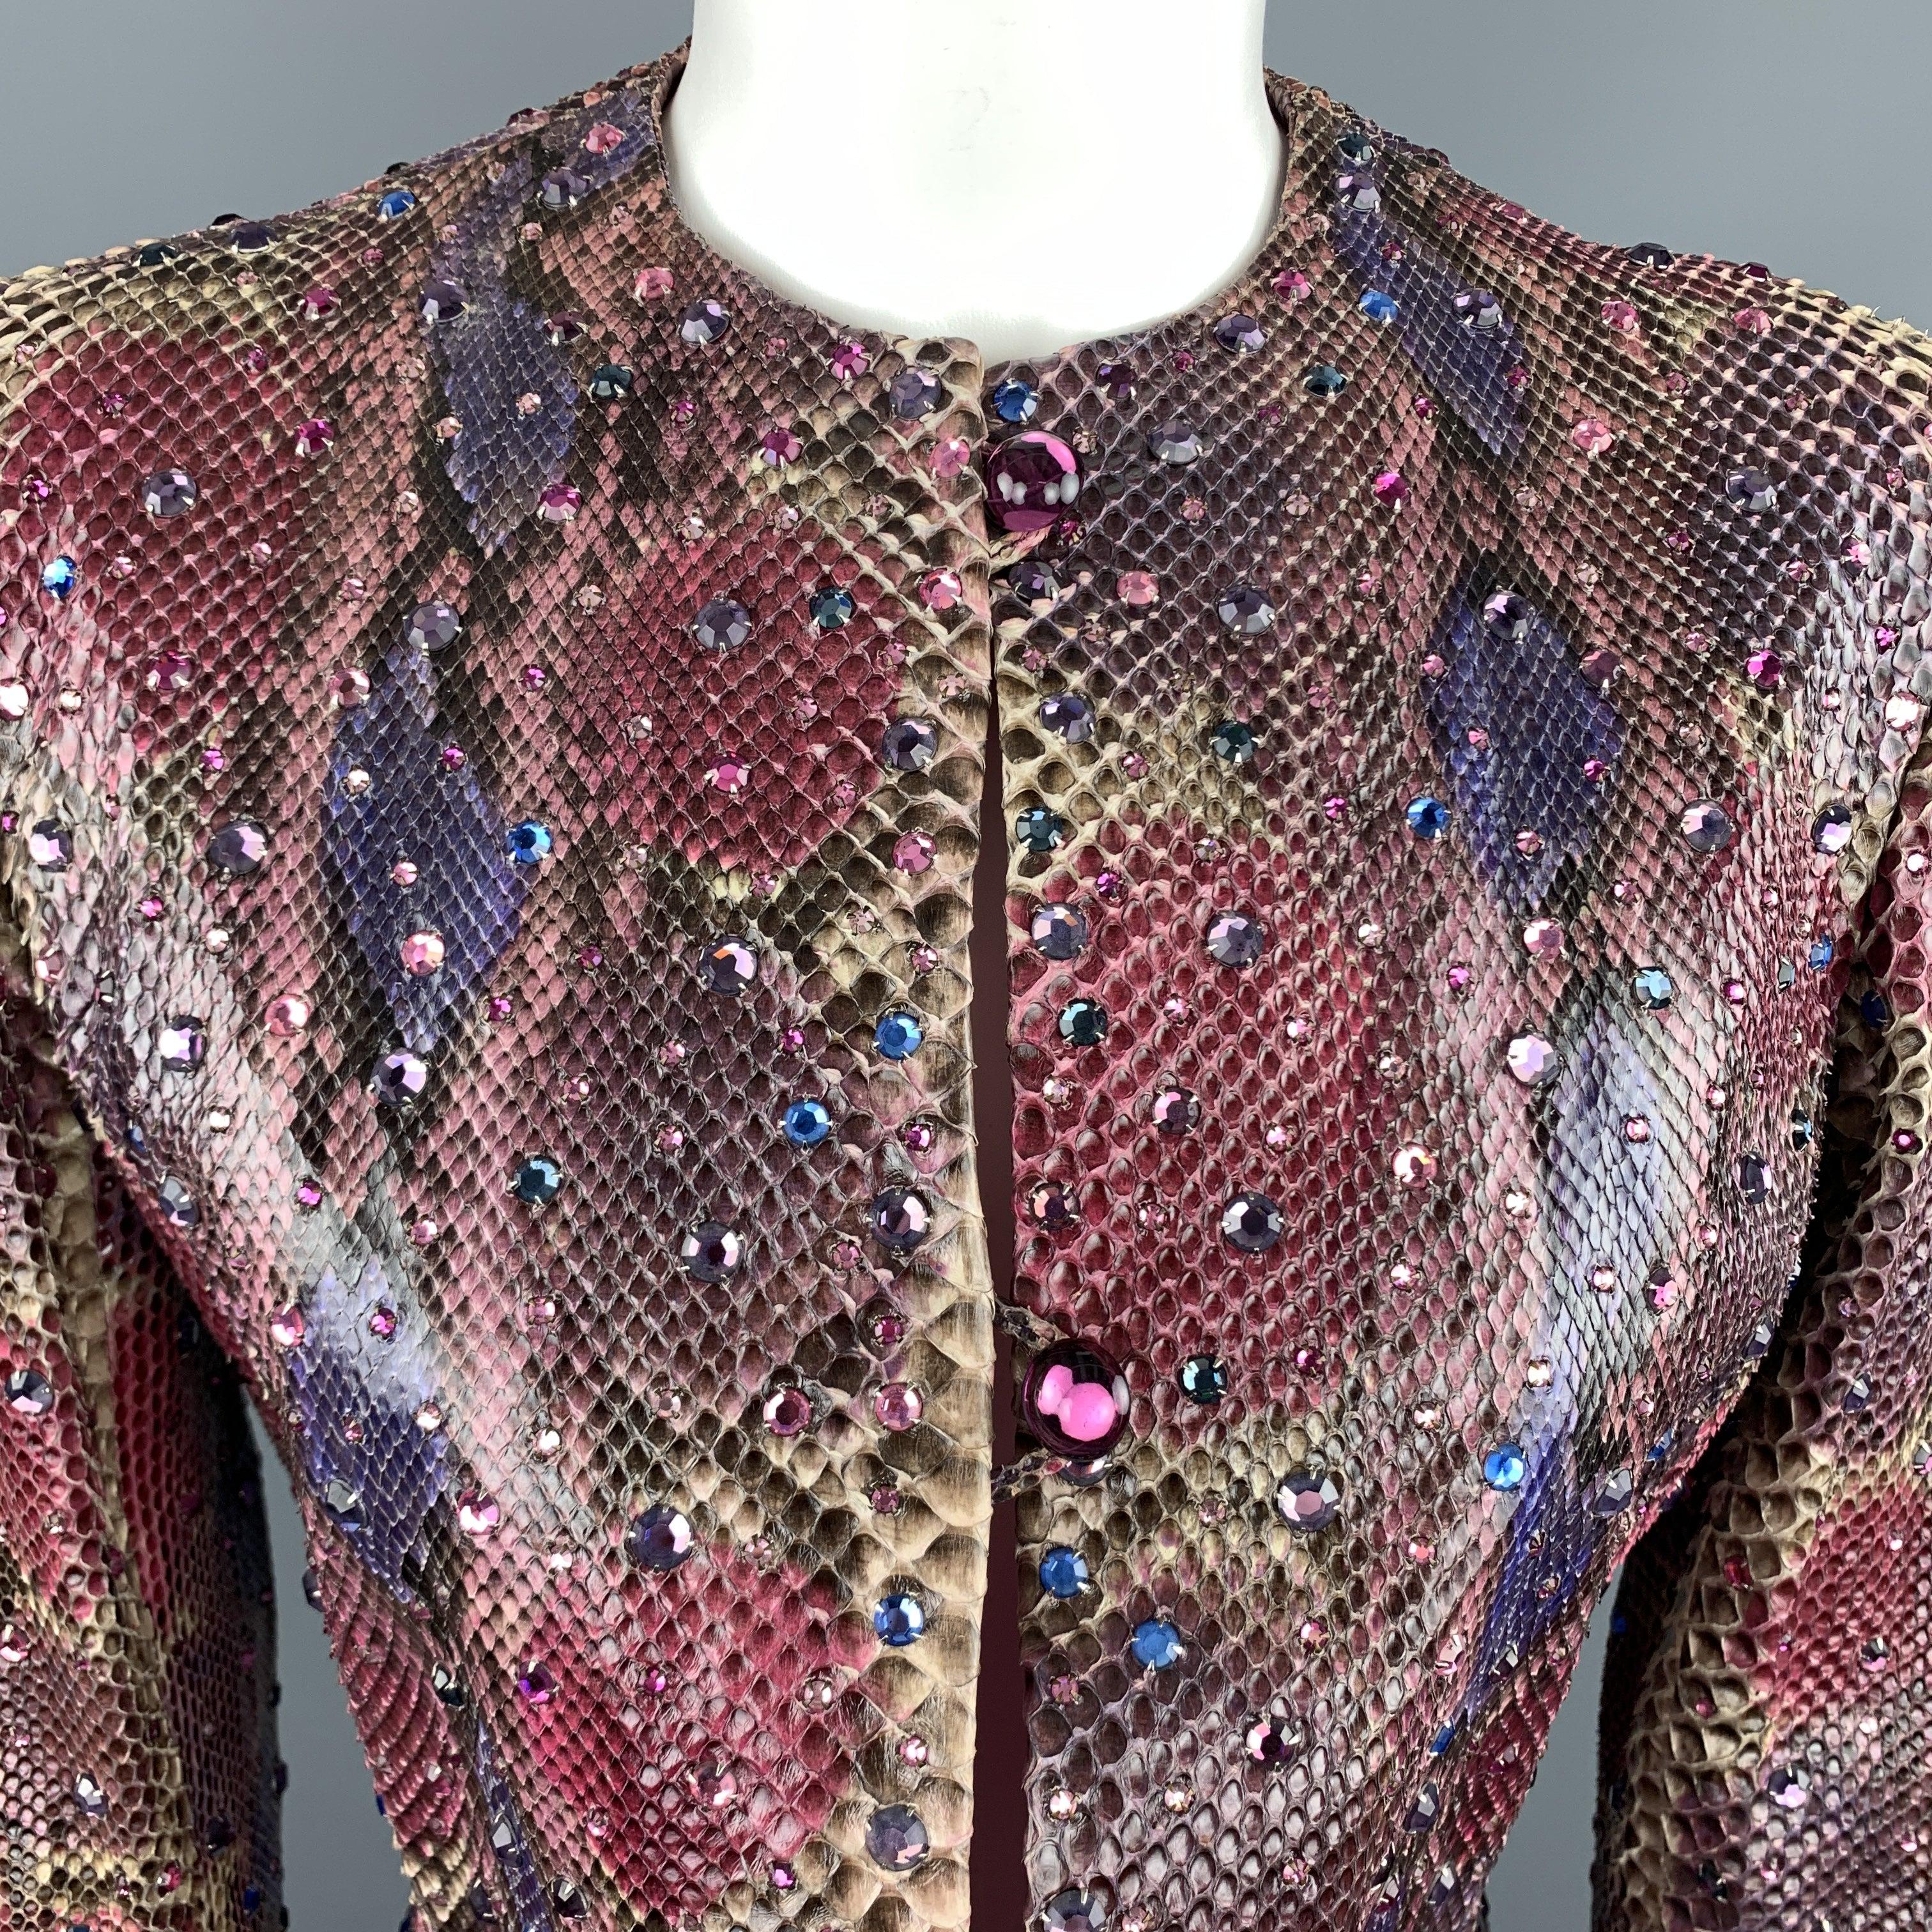 Cette fabuleuse veste BILL BLASS des années 1980 est disponible en peau de serpent rose et violet, avec une encolure sans col, un ourlet court, une fermeture à trois boutons et des clous en strass multicolores. Usure mineure sur la